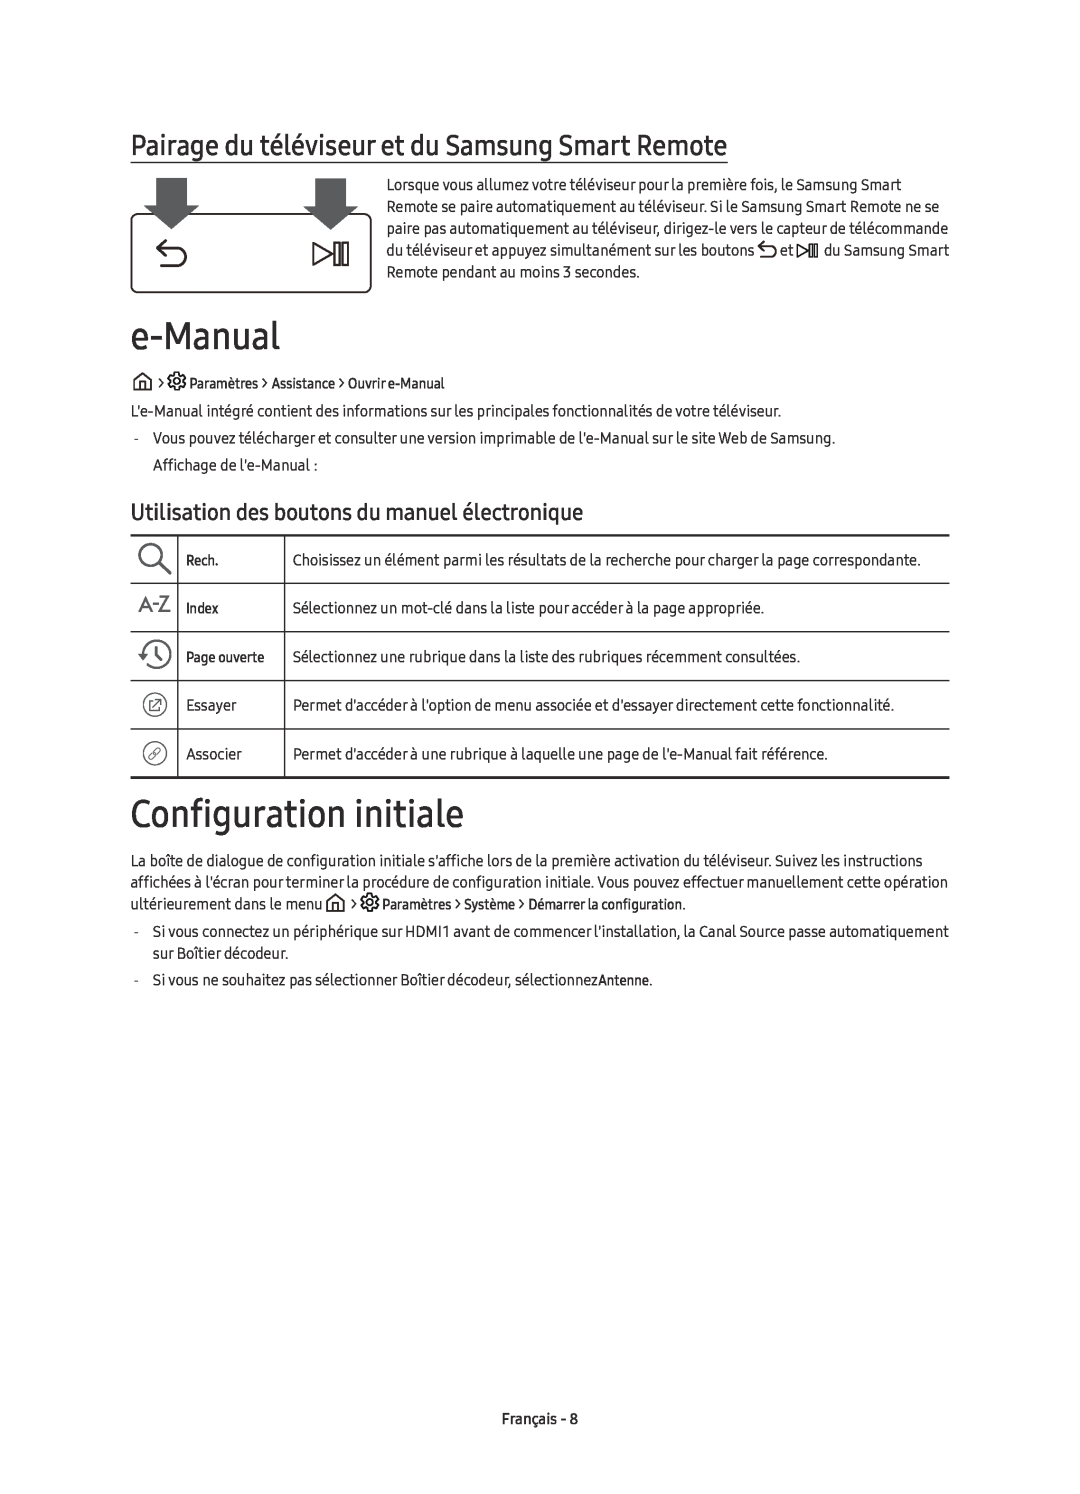 Samsung UE49KU6510UXZT manual e-Manual, Configuration initiale, Pairage du téléviseur et du Samsung Smart Remote, Français 